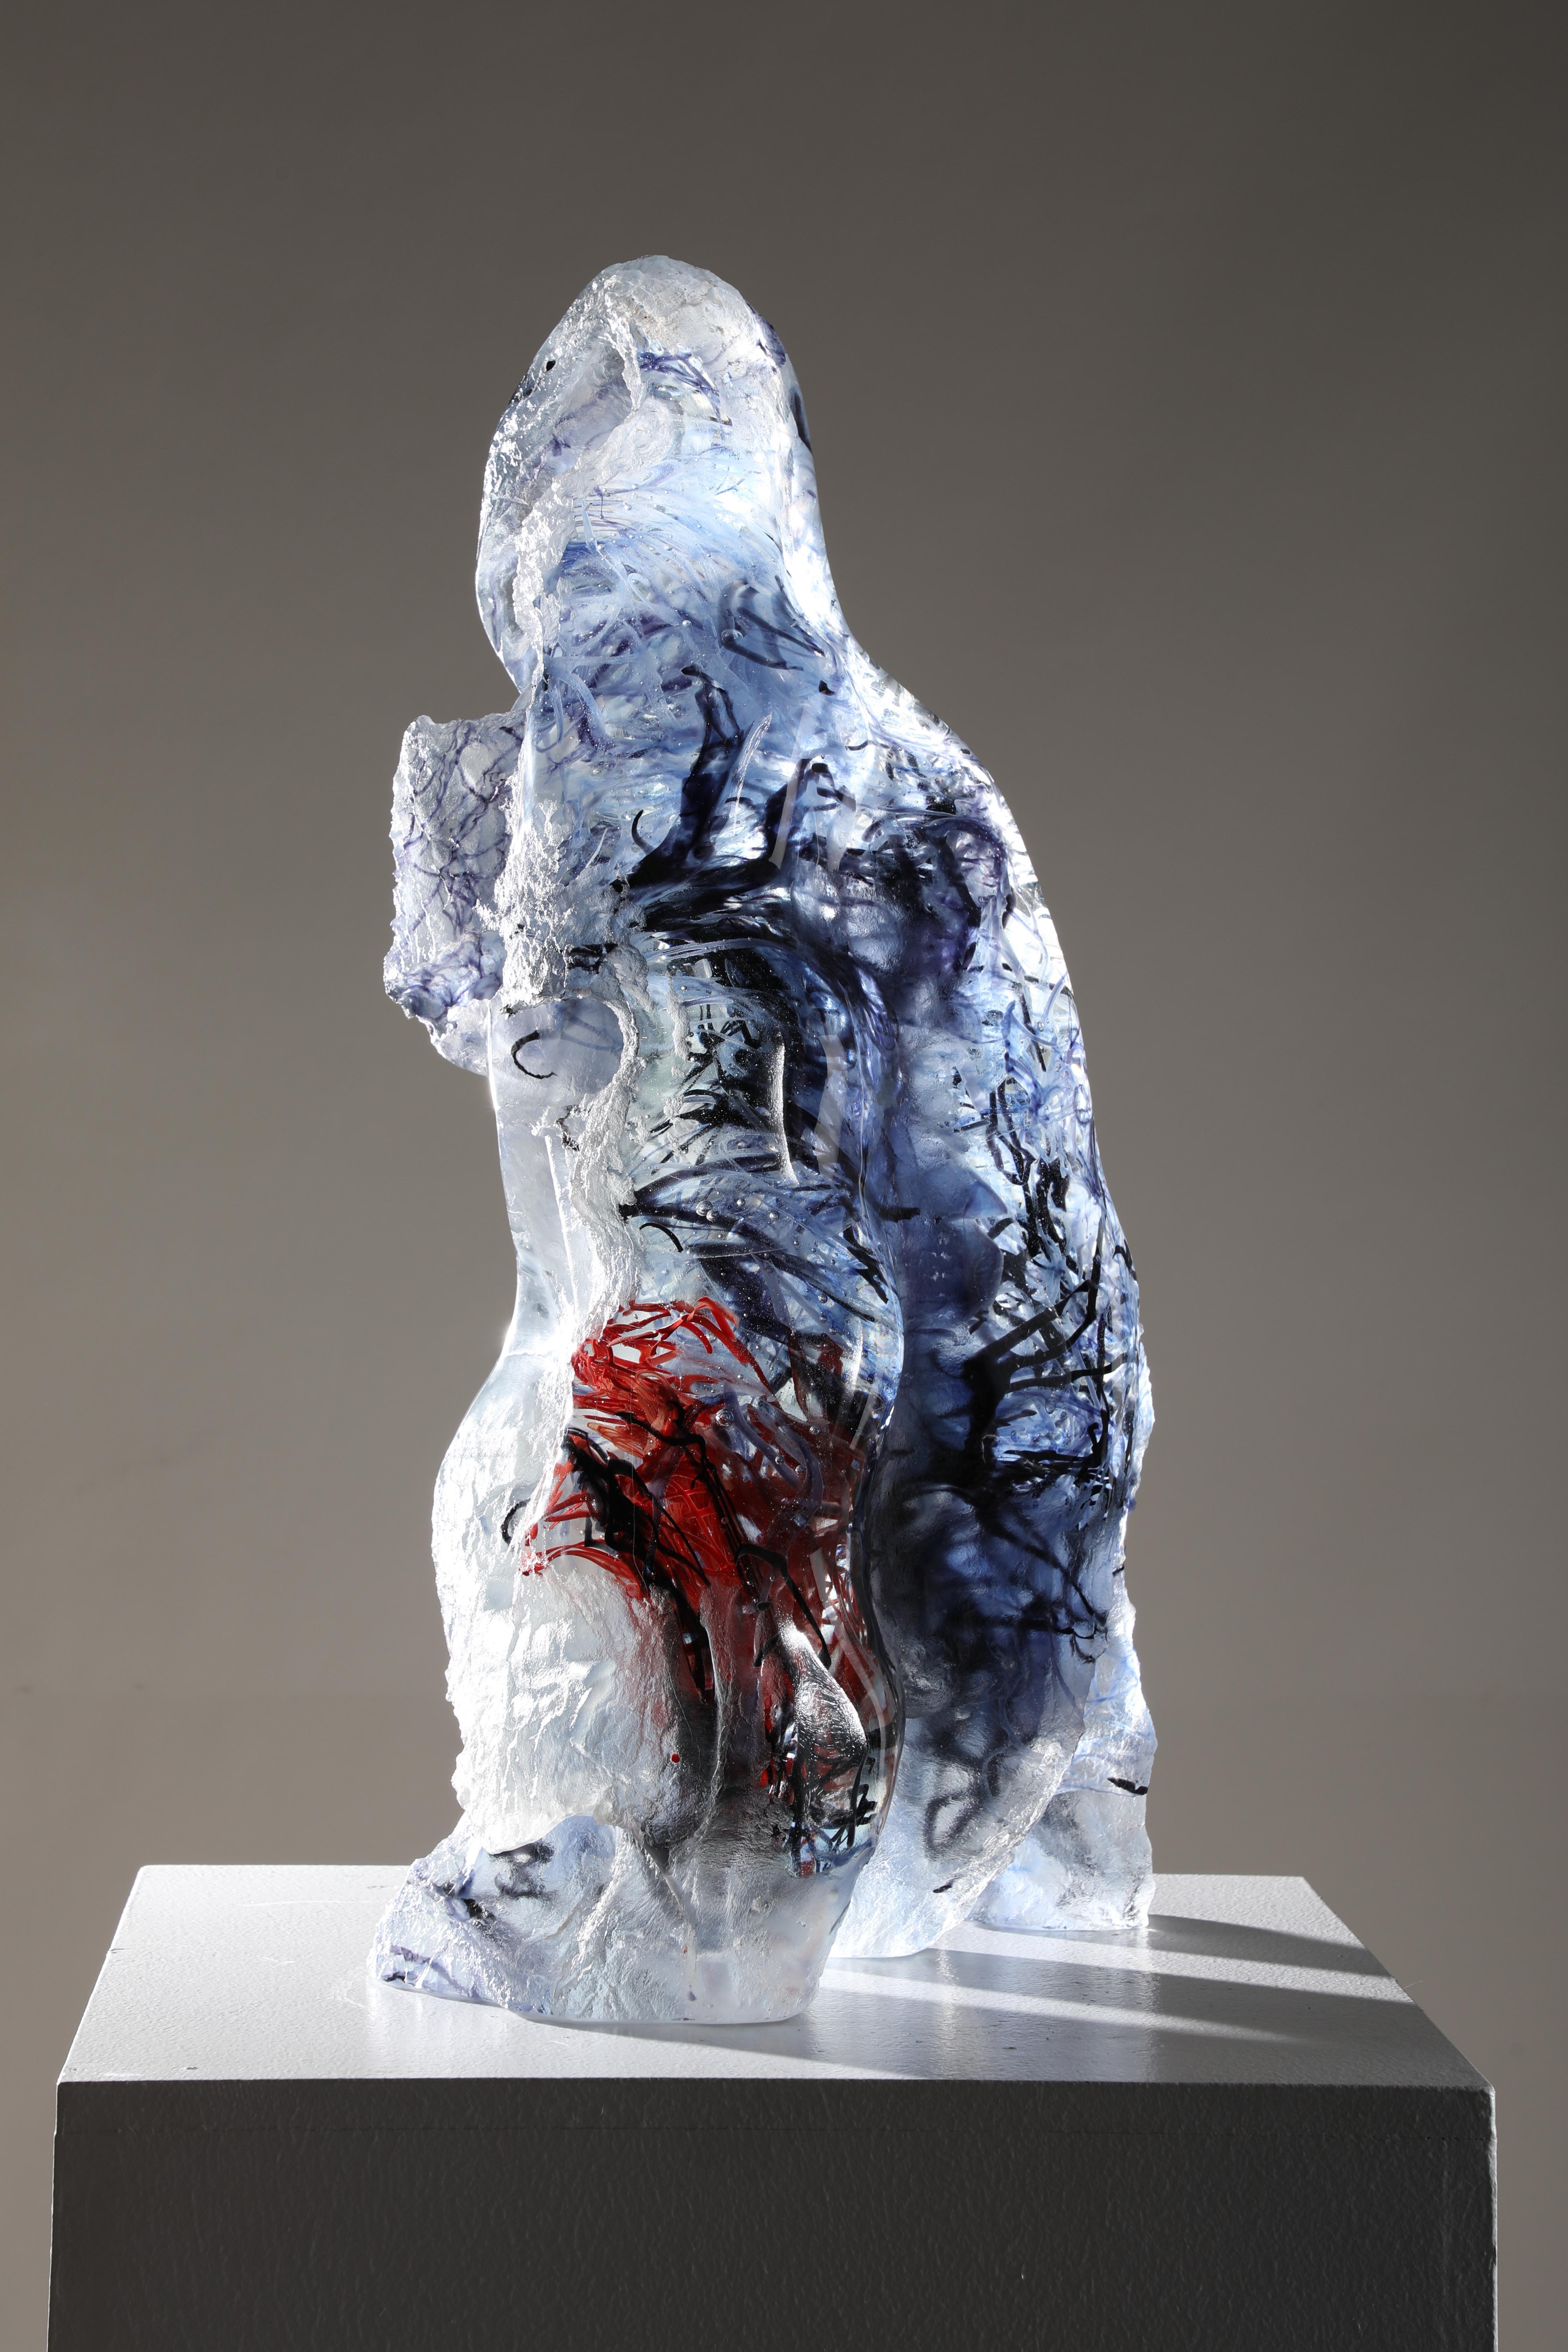 waka Tupapaku" ist eine zeitgenössische abstrakte Gussglasskulptur von David Ruth aus seiner Serie Internal Space. 

Über die Serie Innenraum:
Davids Experimente mit Flachglas und Verschmelzung führten dazu, dass er versuchte, das Glas dicker zu